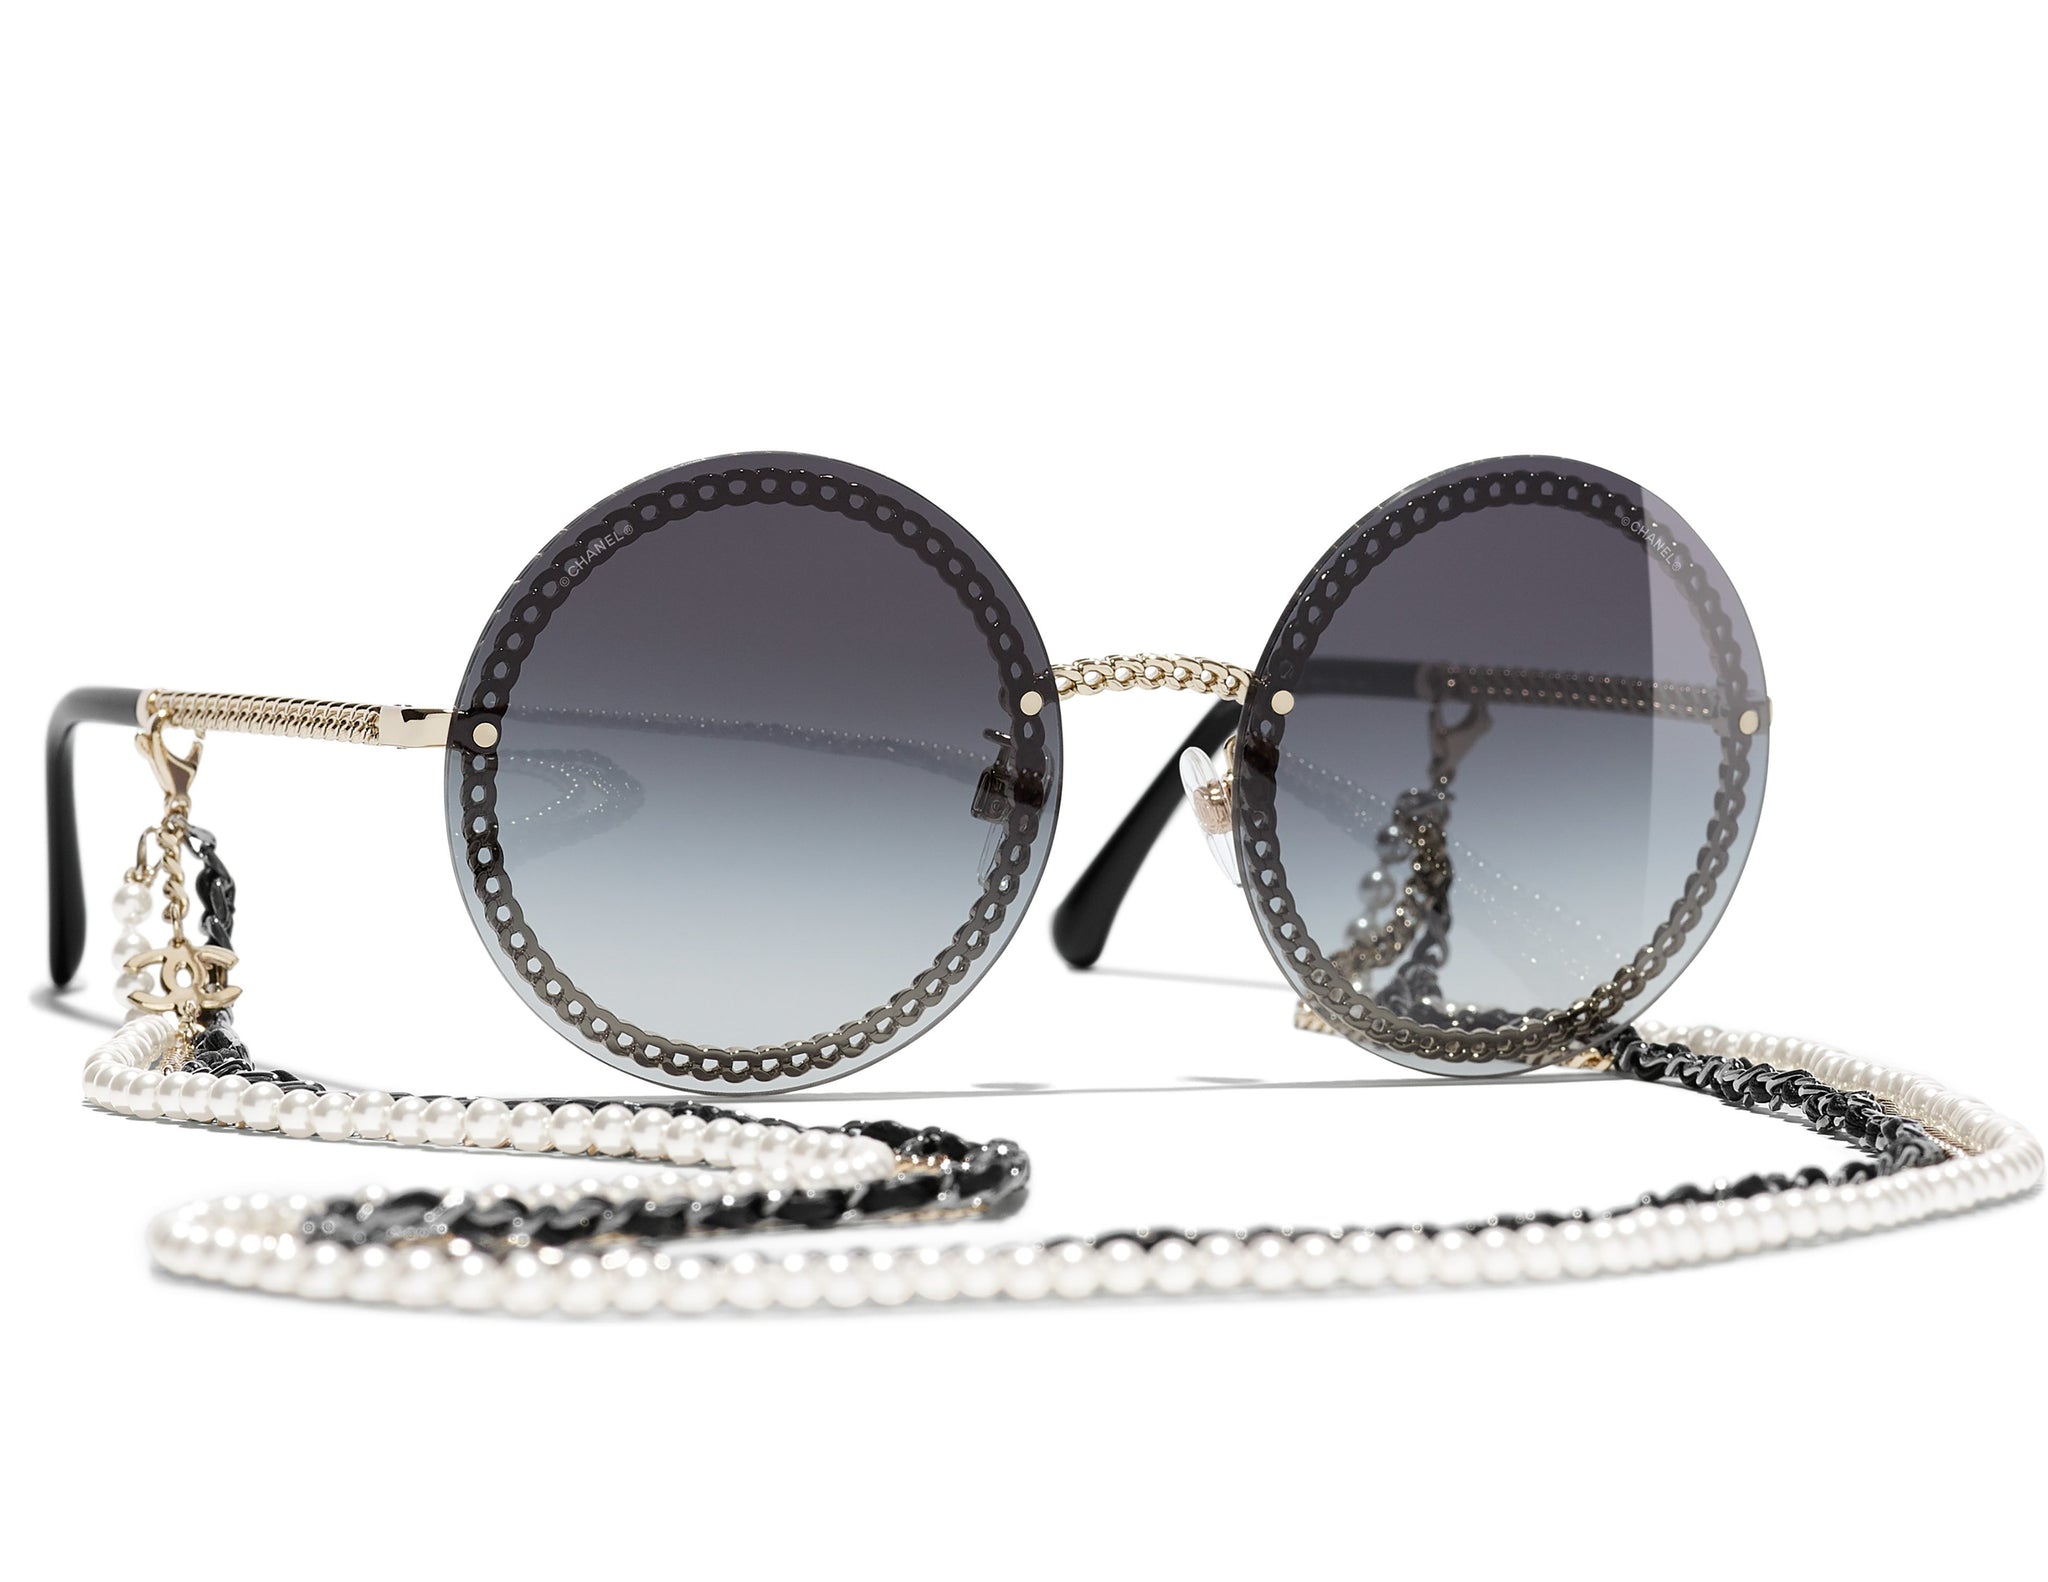 CHANEL, Accessories, Chanel Pilot Sunglasses